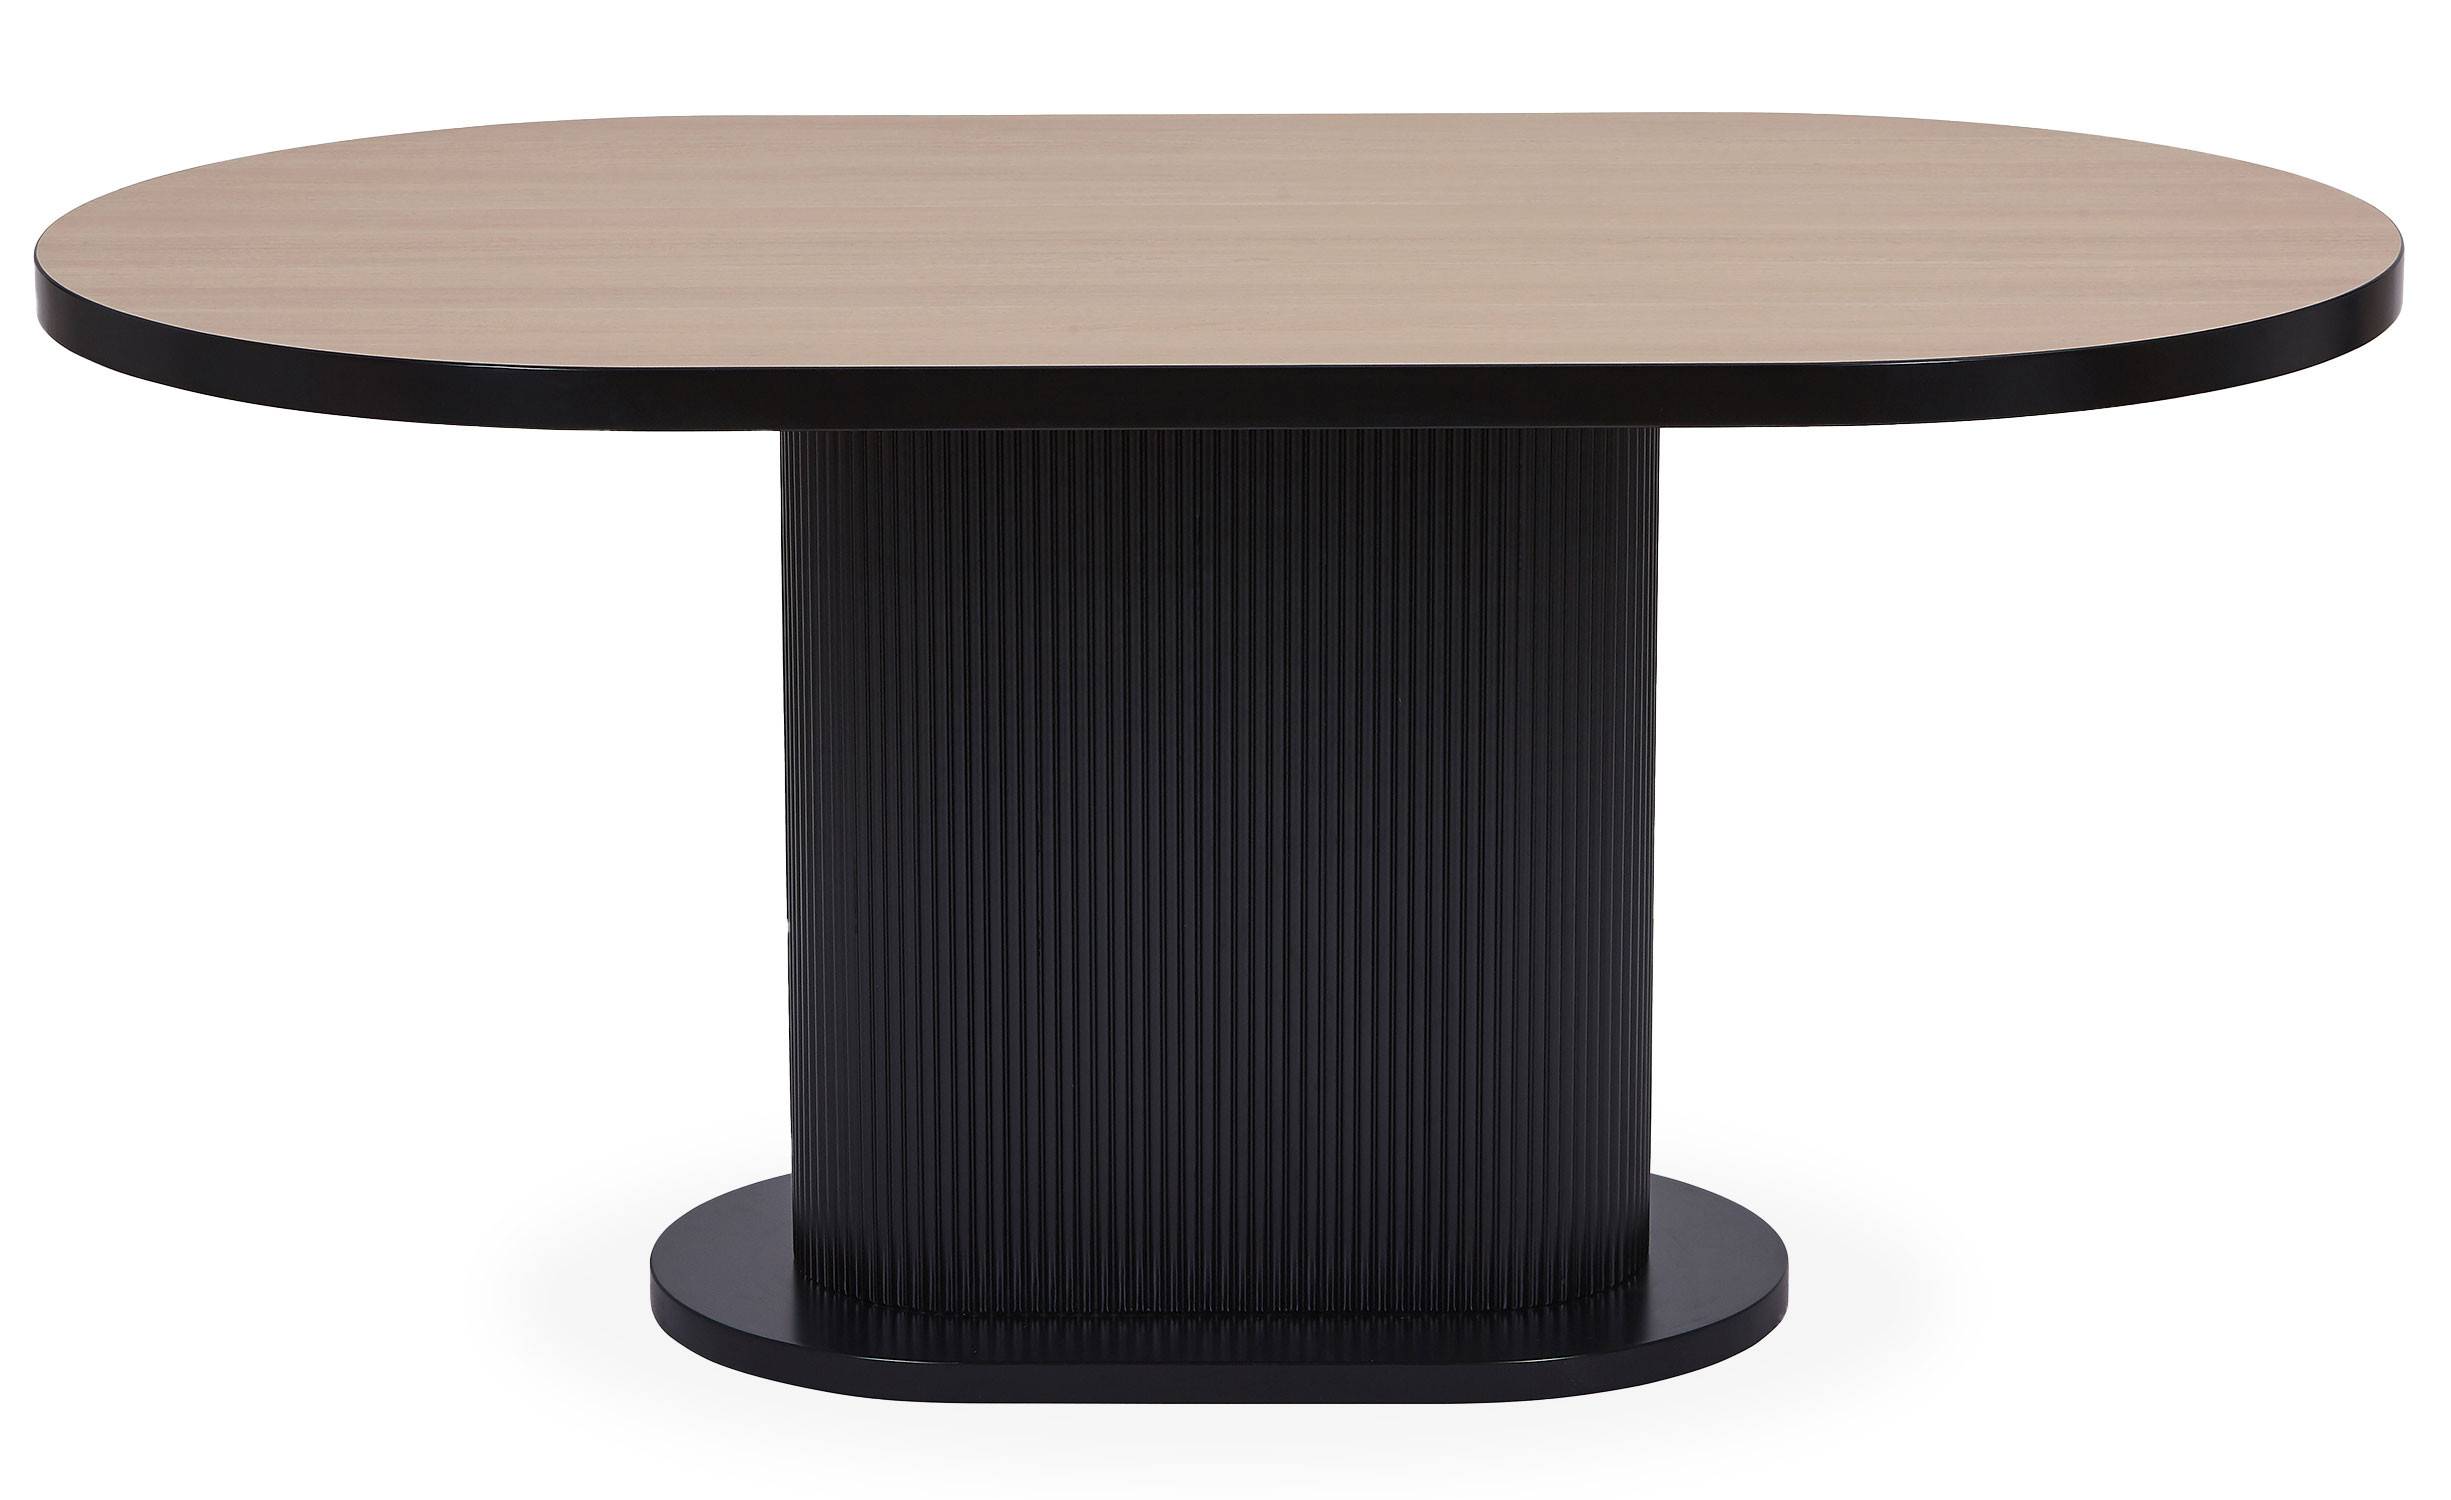 Fanona licht hout en zwarte tafel met centrale kolompoot